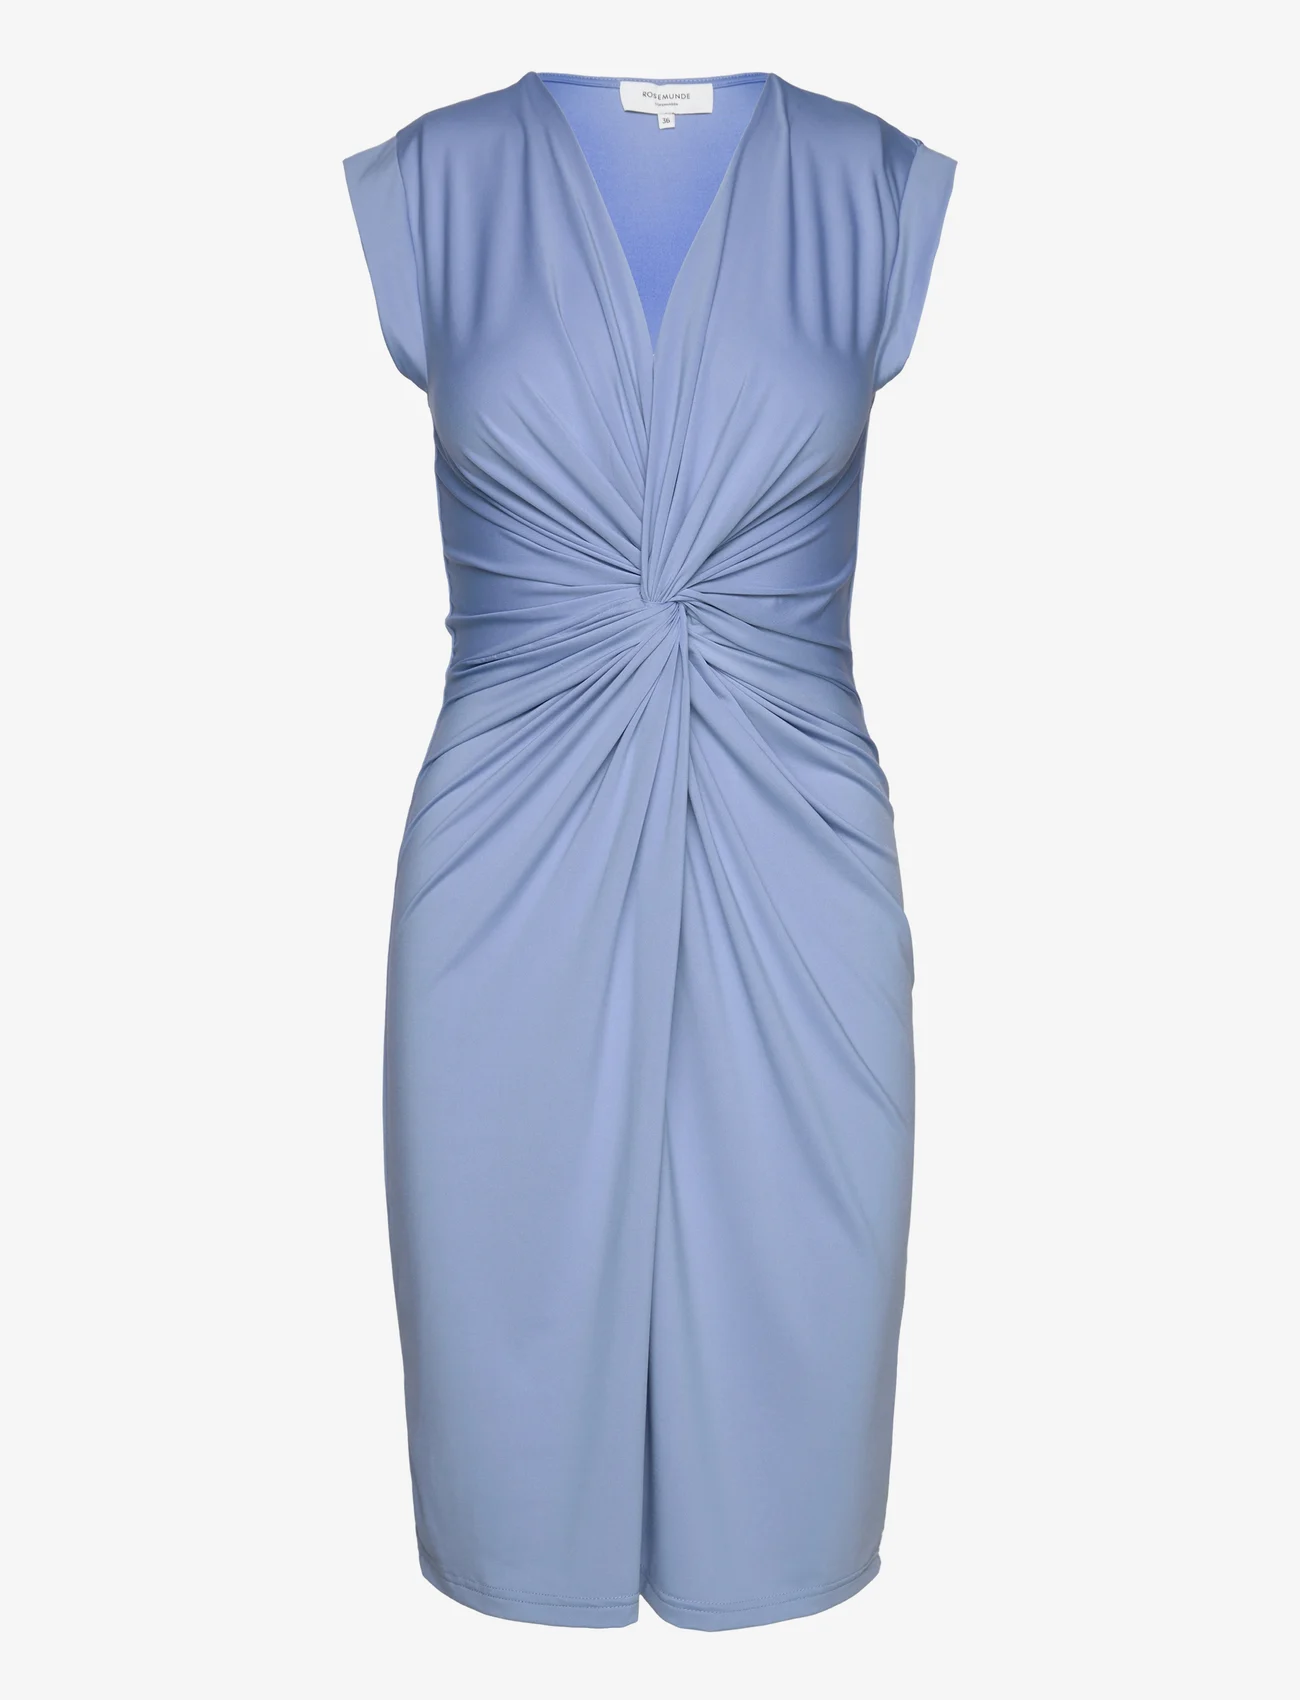 Rosemunde - Dress - ballīšu apģērbs par outlet cenām - blue allure - 0